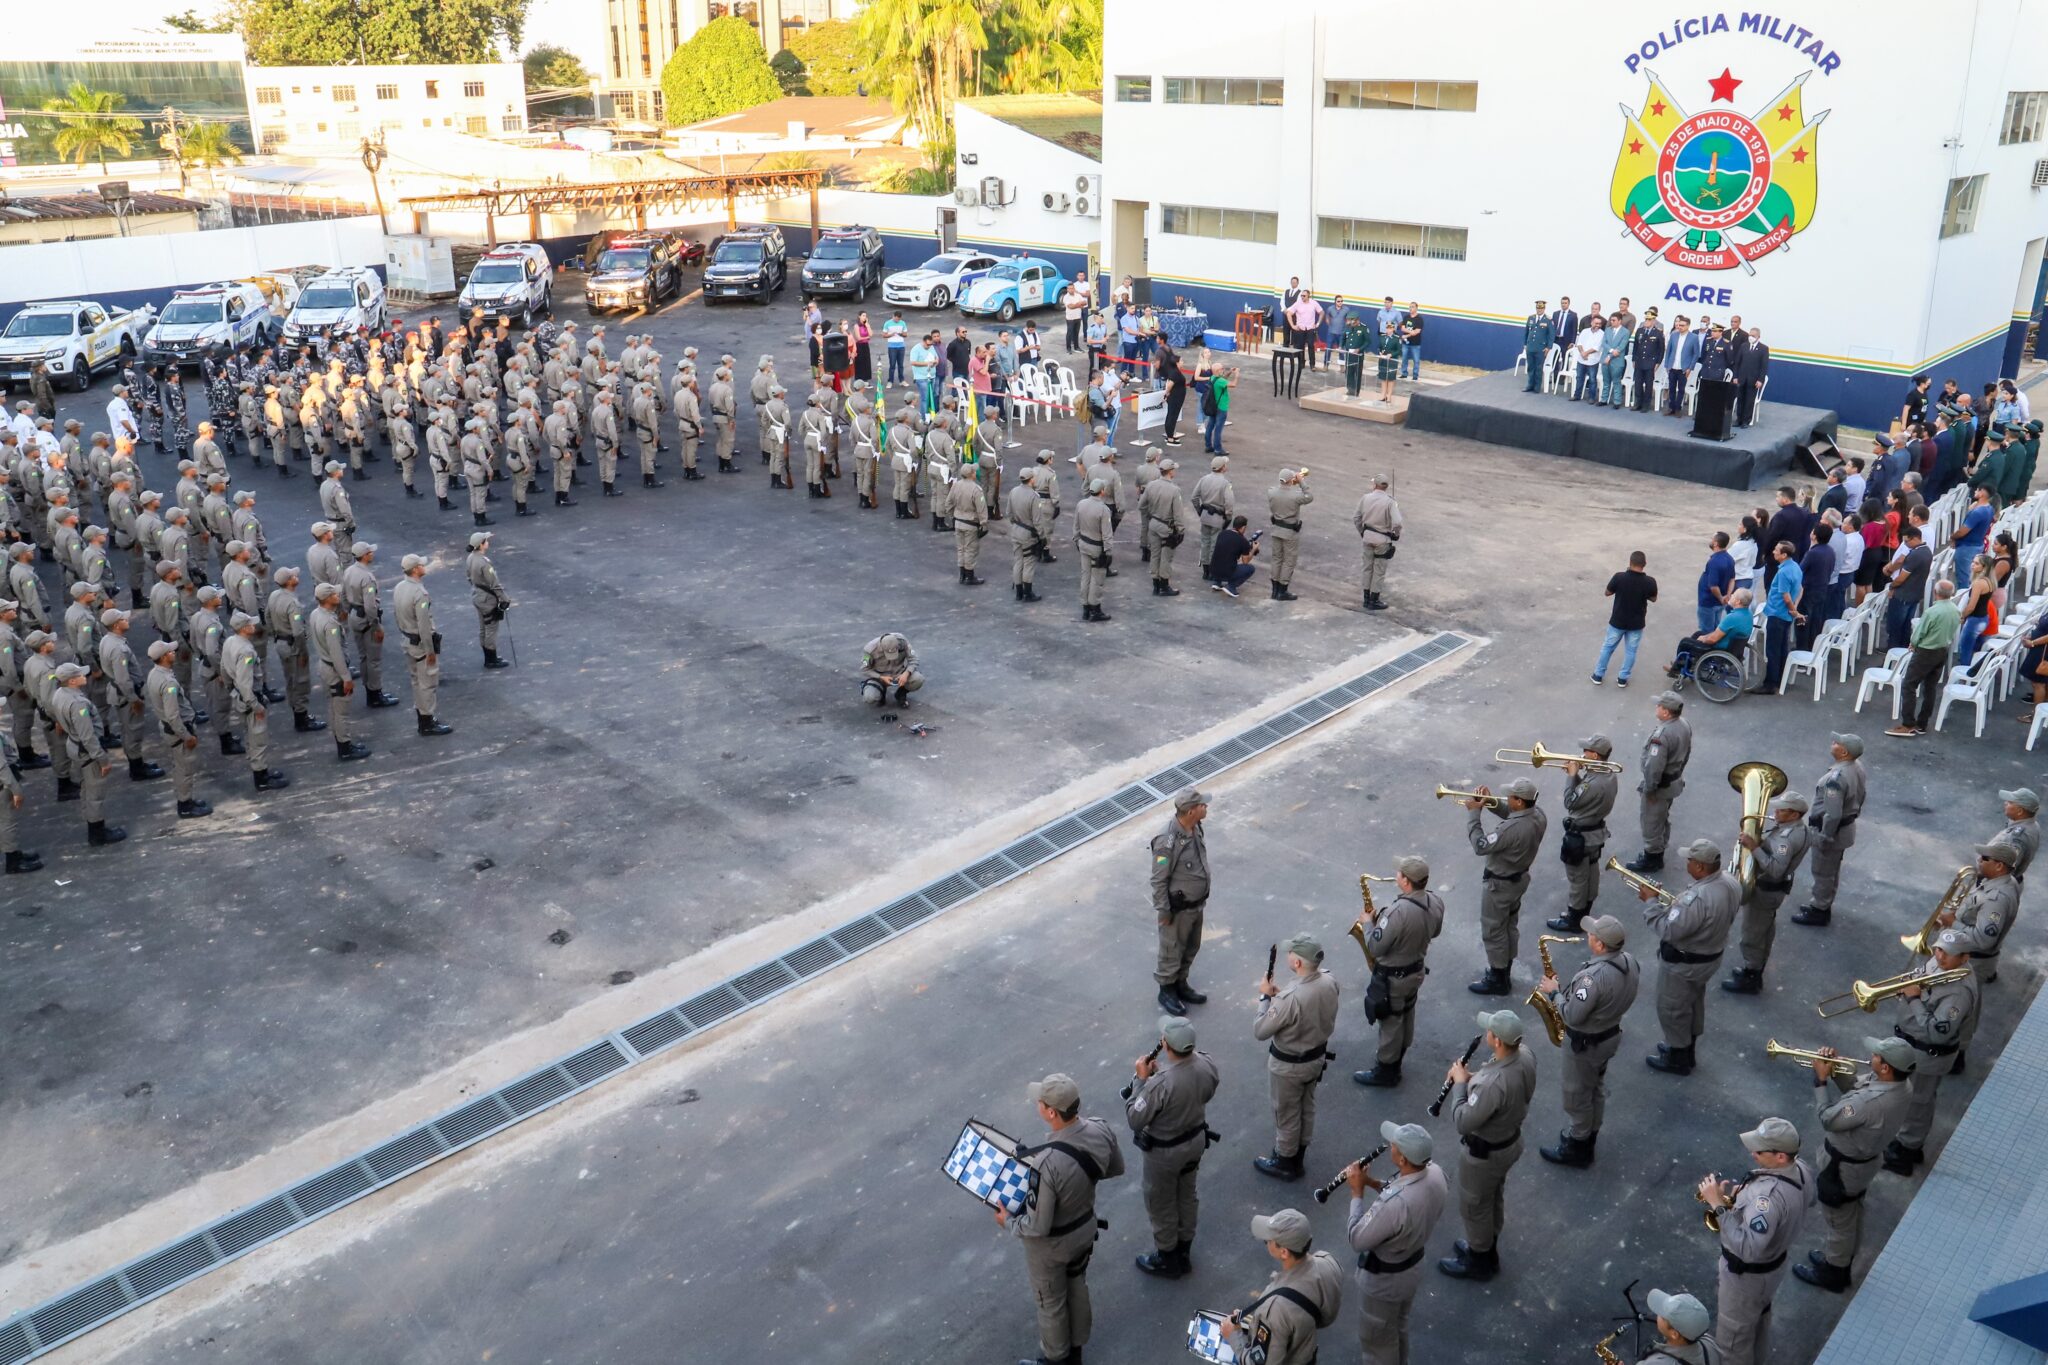 Nos últimos três anos e meio, governo do Acre tem feito grandes investimentos na Polícia Militar. Foto: Marcos Vicentti/Secom